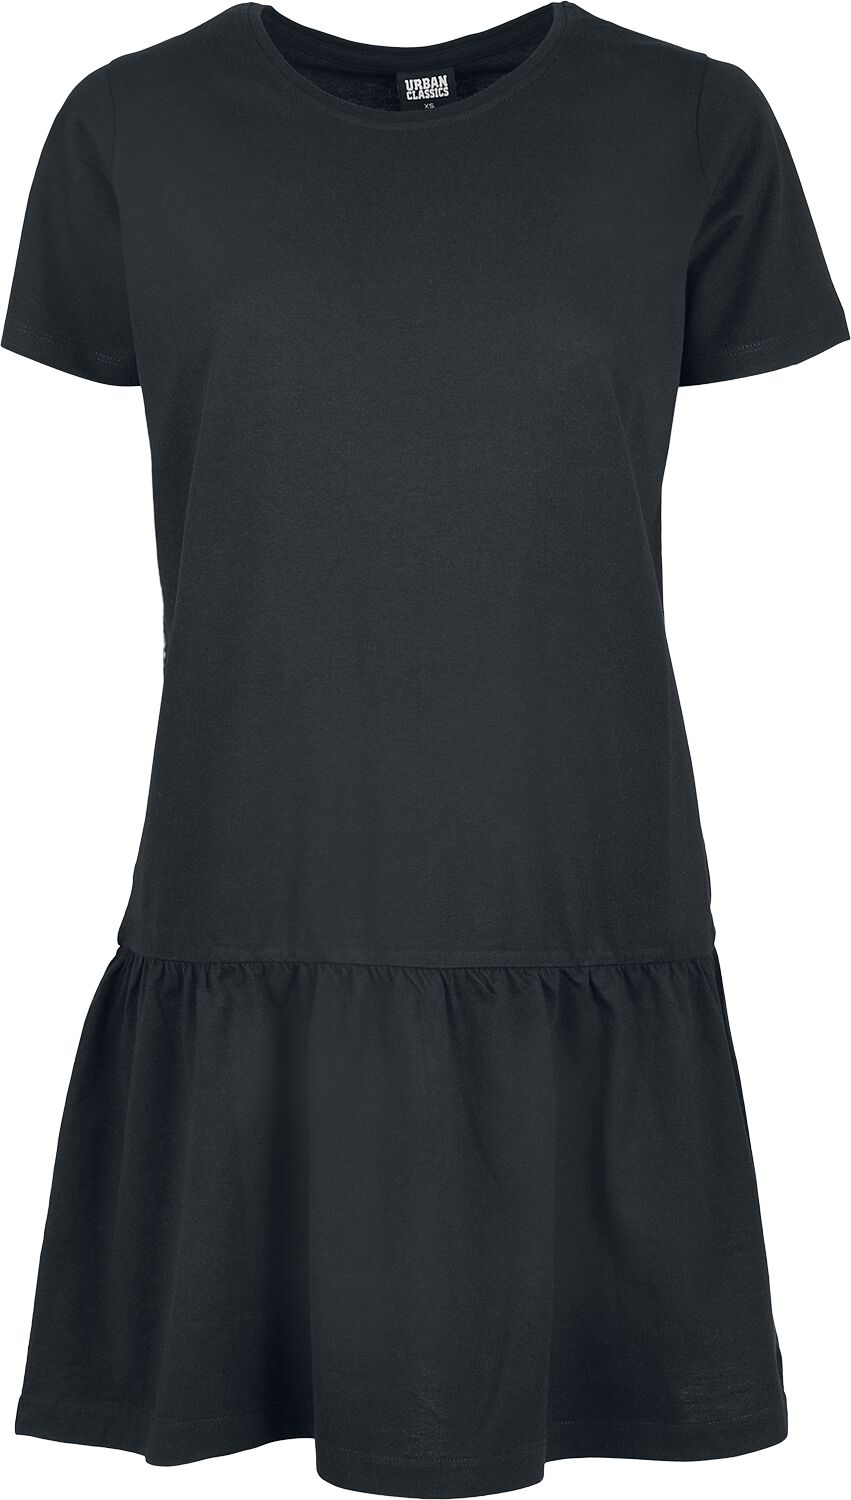 Urban Classics Kurzes Kleid - Ladies Valence Tee Dress - XS bis 5XL - für Damen - Größe S - schwarz